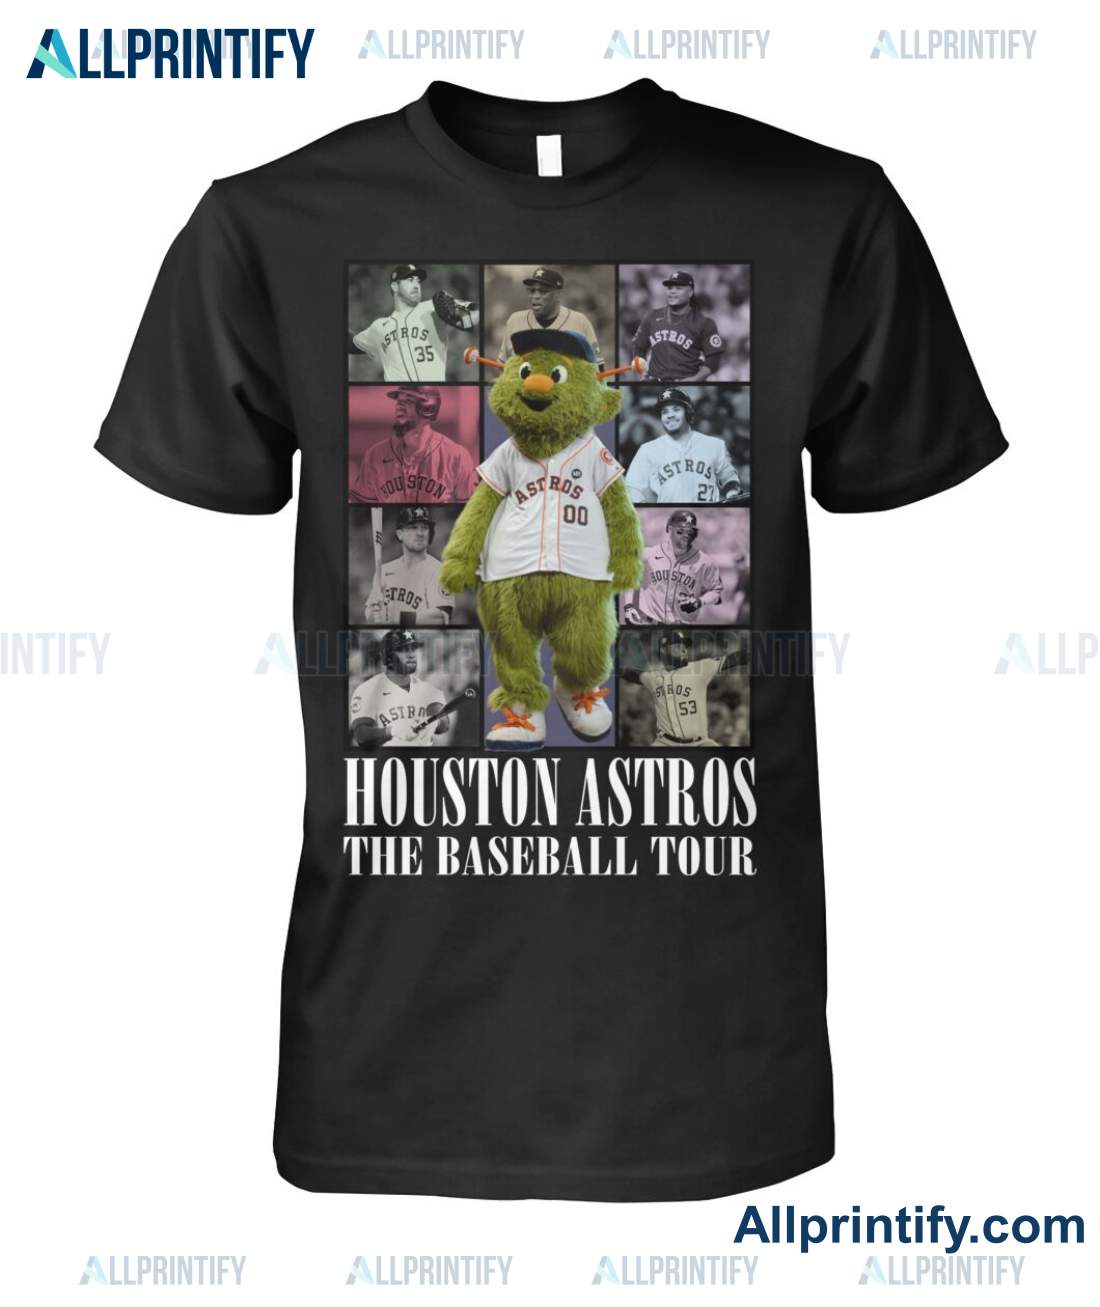 Houston Astros The Baseball Tour Shirt a